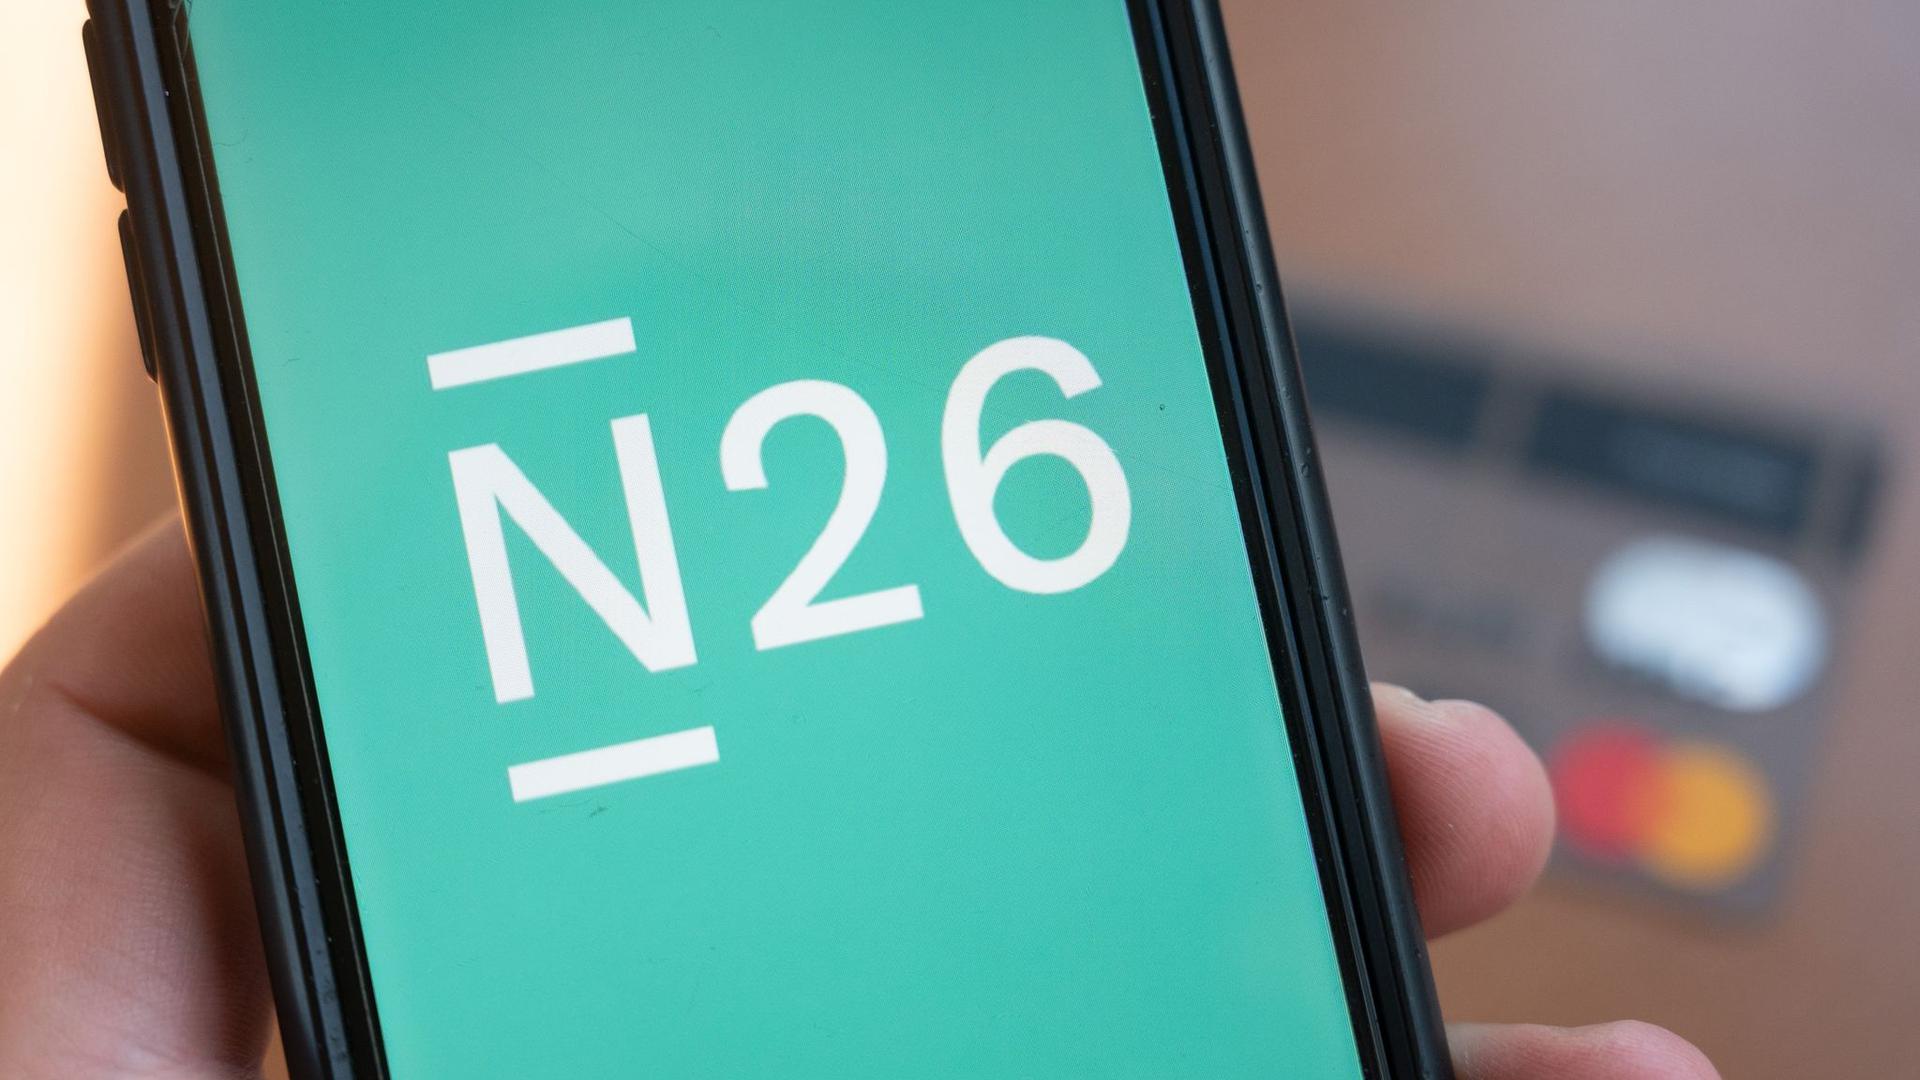 Die Smartphone-Bank N26 hat bei Investoren über 900 Millionen Dollar eingesammelt. Mit dieser Finanzierungsrunde ist N26 zum wertvollsten FinTech in Deutschland aufgestiegen.